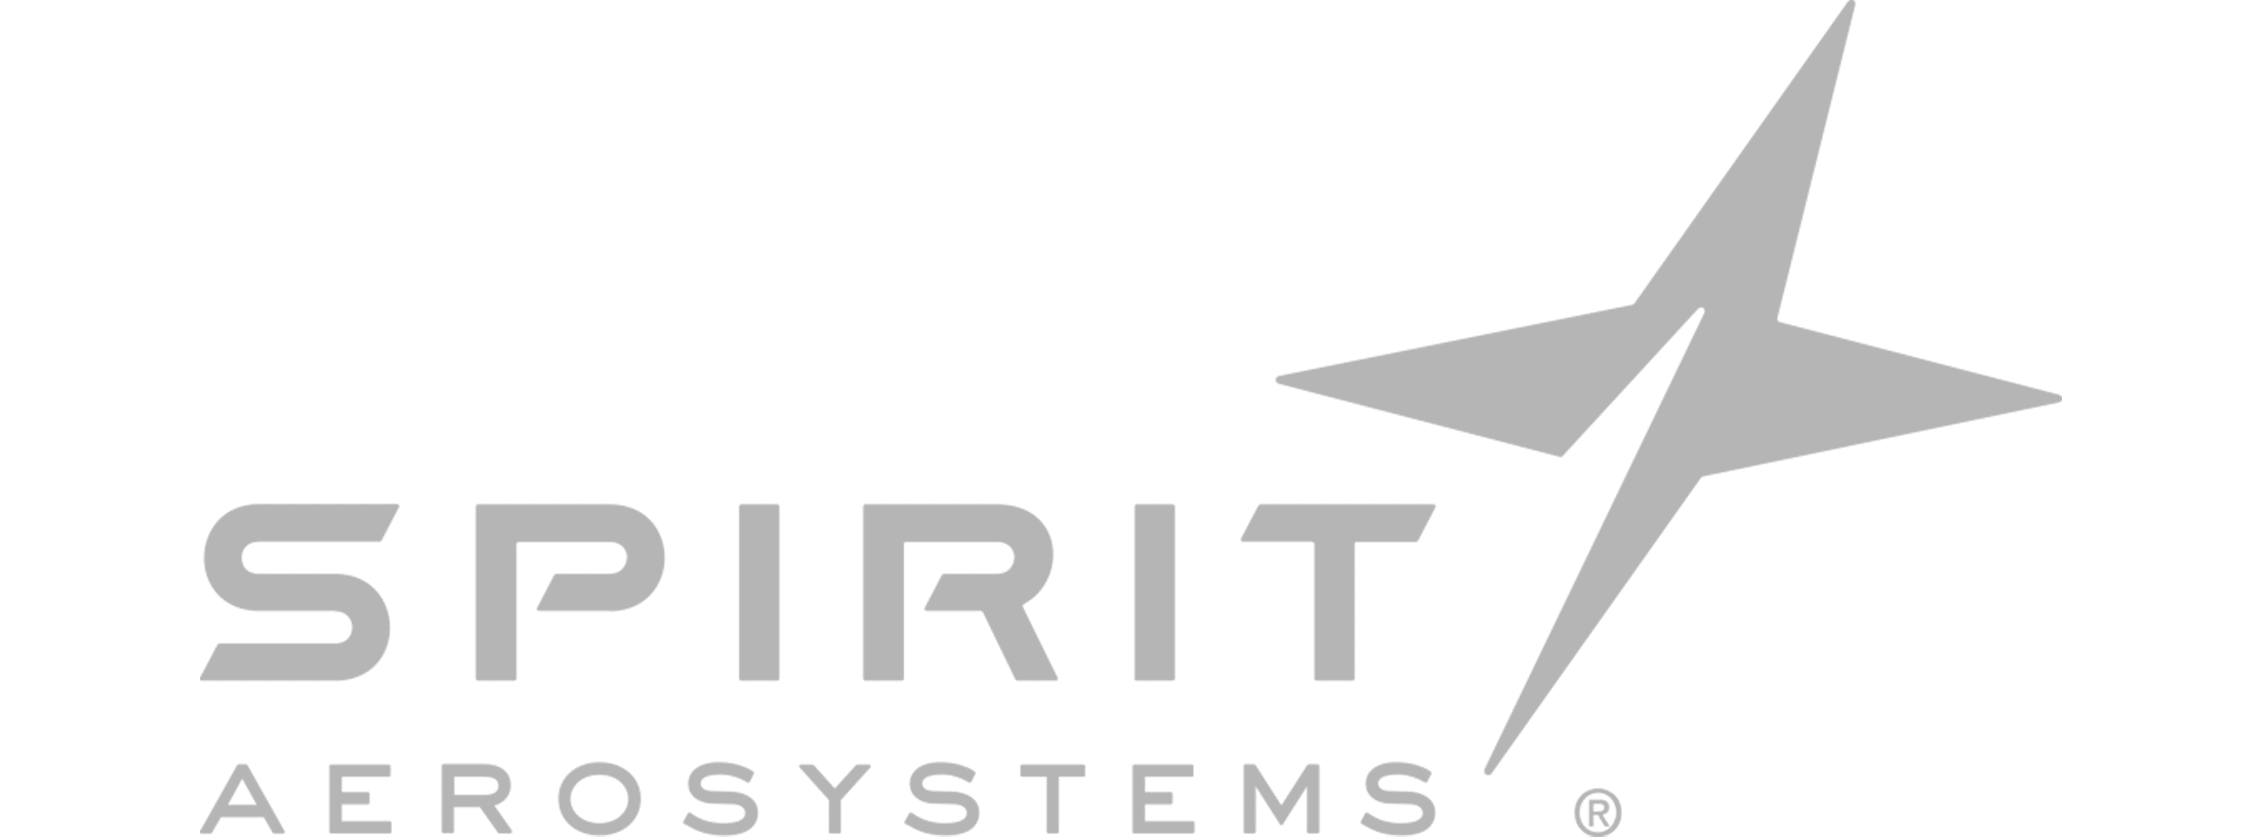 spirit-aerosystems-gris